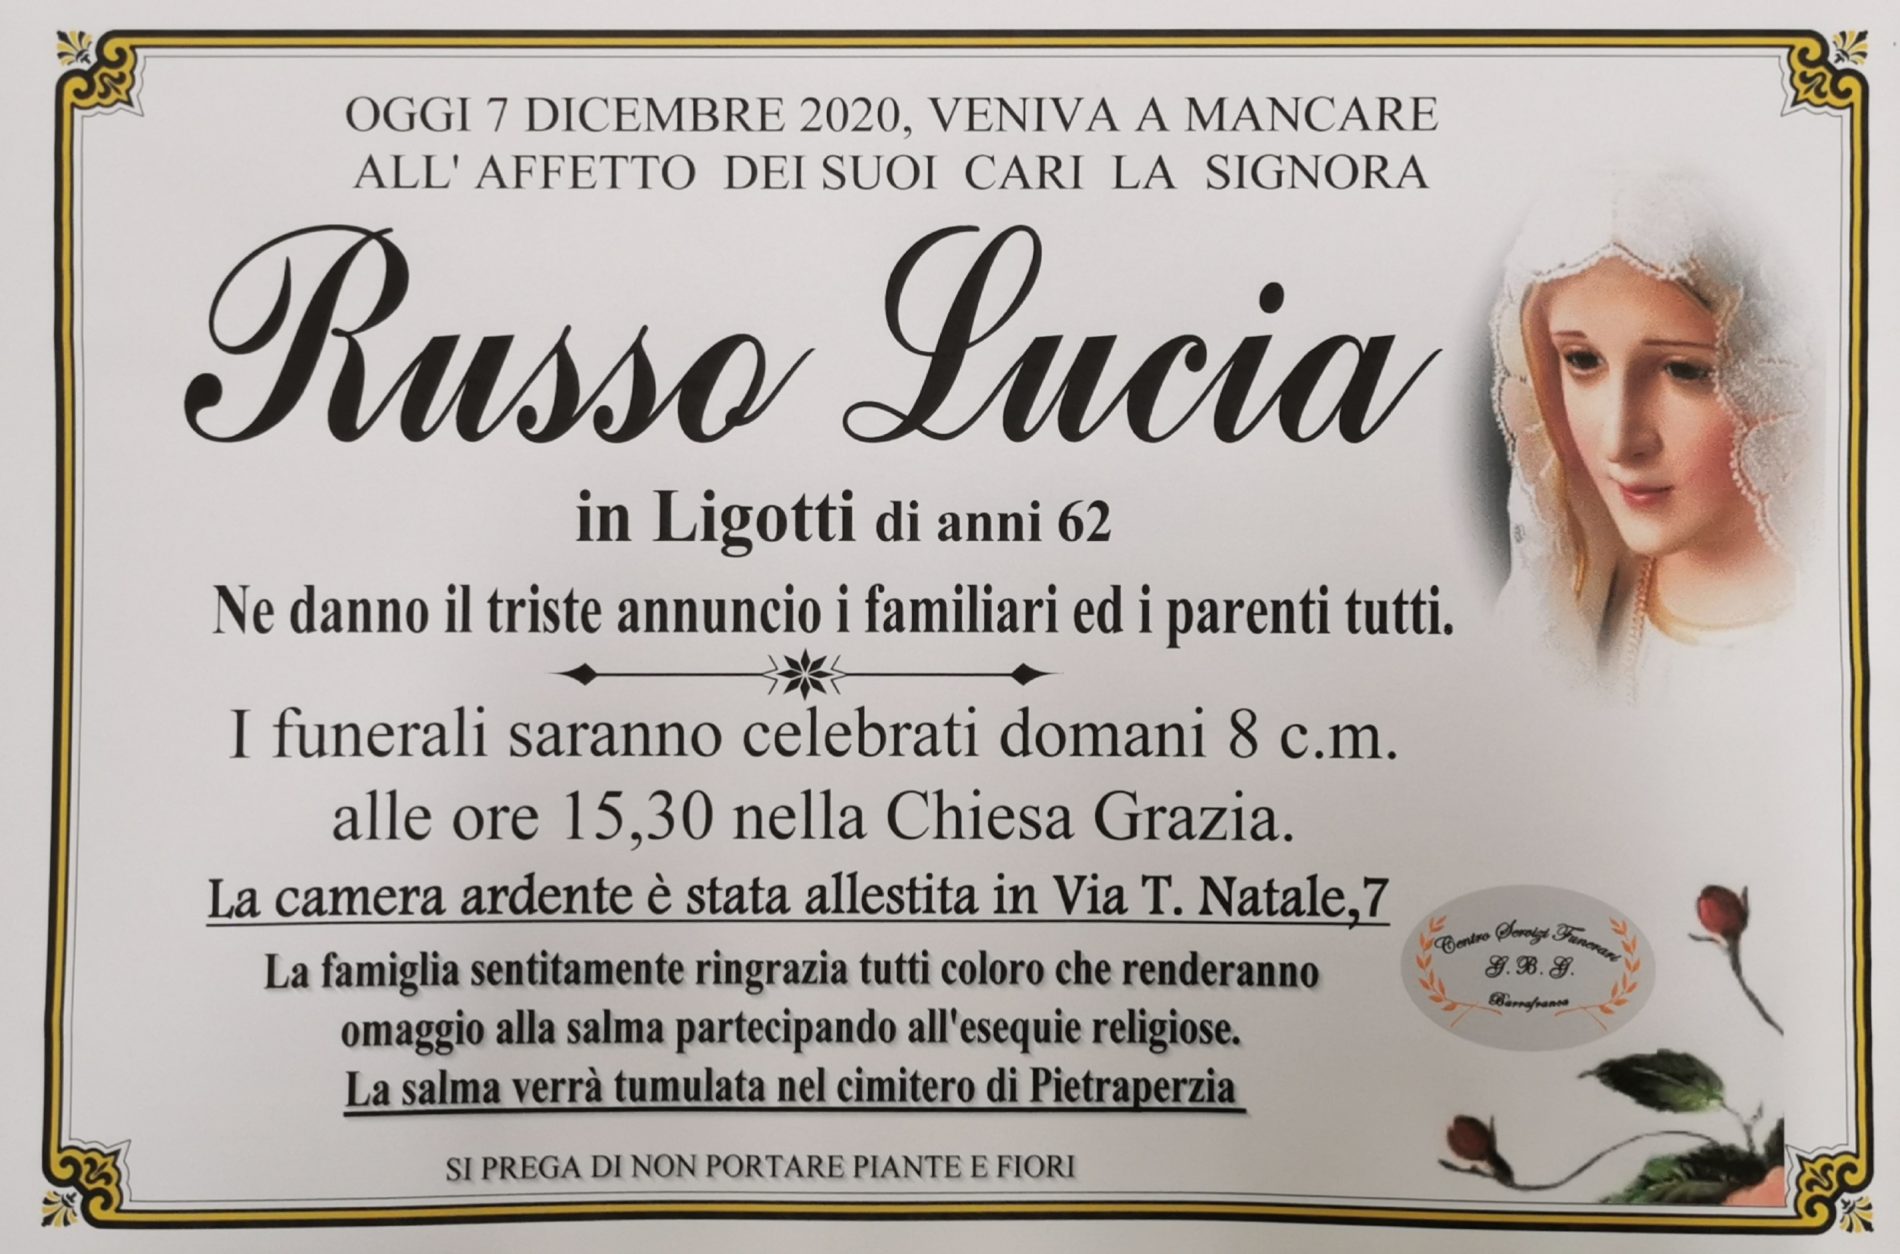 Annuncio servizi funerari agenzia G.B.G. sig.ra Russo Lucia in Li Gotti di anni 62